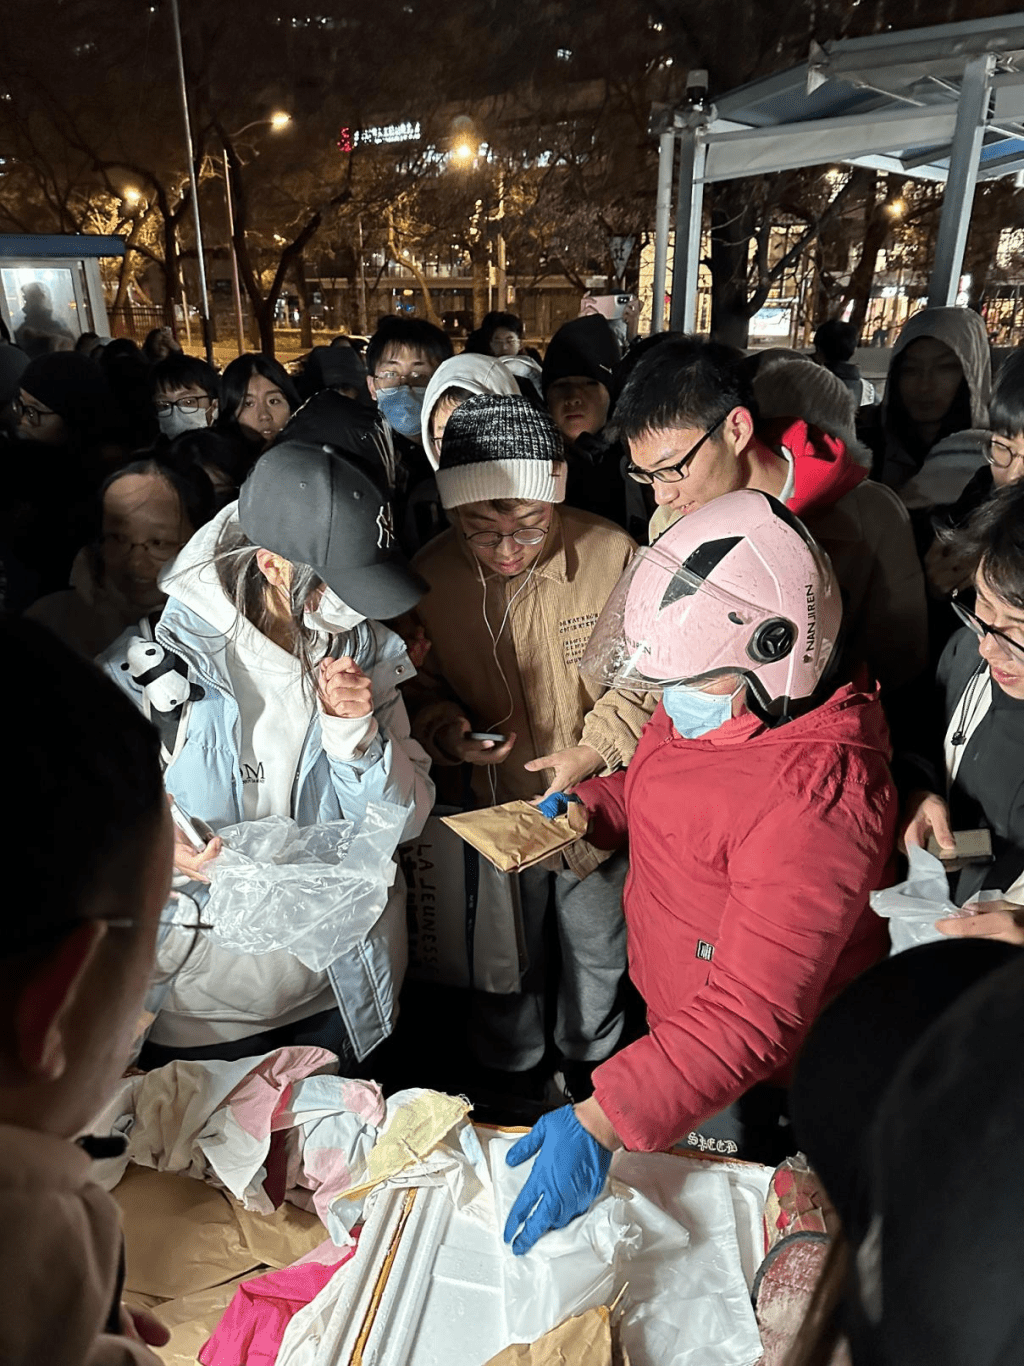 鵝腿阿姨分別在清華大學、北京大學和人民大學三所名校門外輪流擺攤。